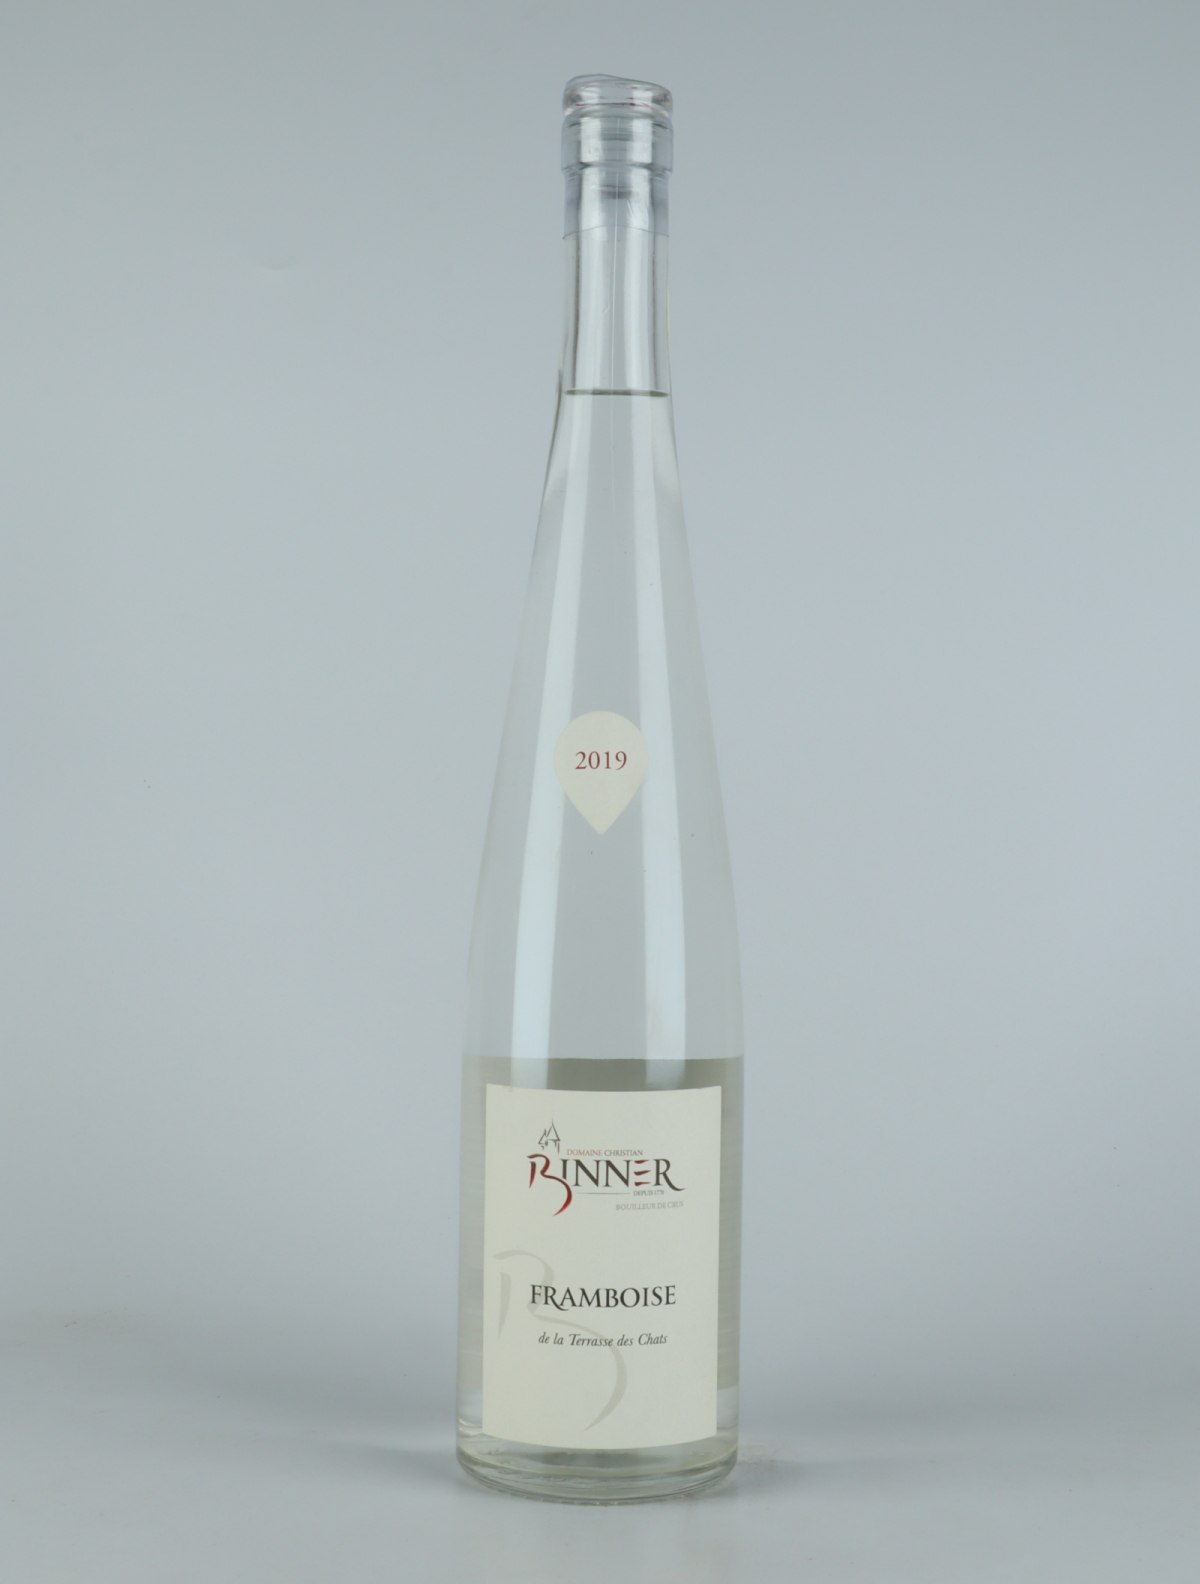 A bottle N.V. Framboise - Domaine Binner Spirits from Domaine Christian Binner, Alsace in France